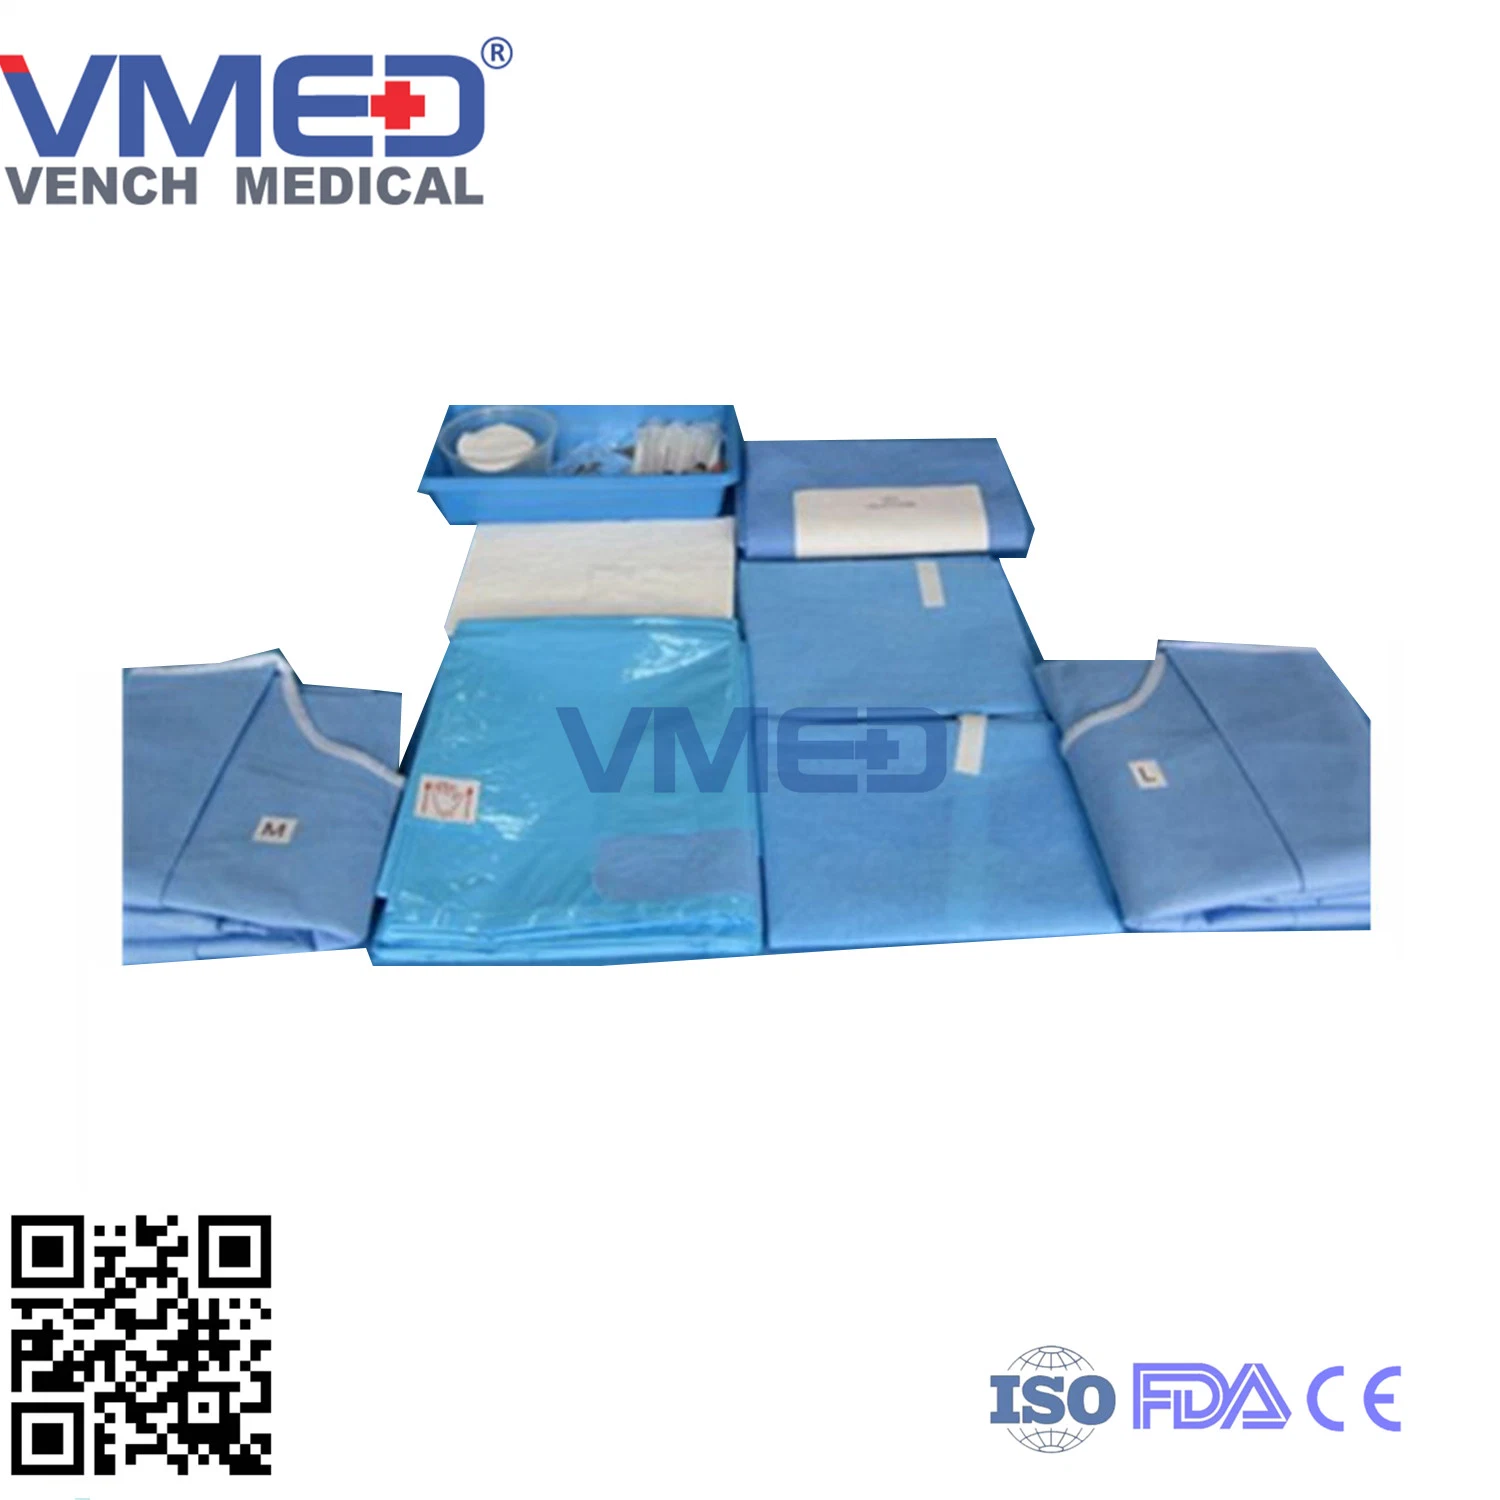 Drapé de livraison de gynécologie chirurgicale jetable Pack pour usage médical avec la CE et l'approbation de l'ISO de la Chine fabricant haut de la qualité de l'urologie et de gynécologie Packs